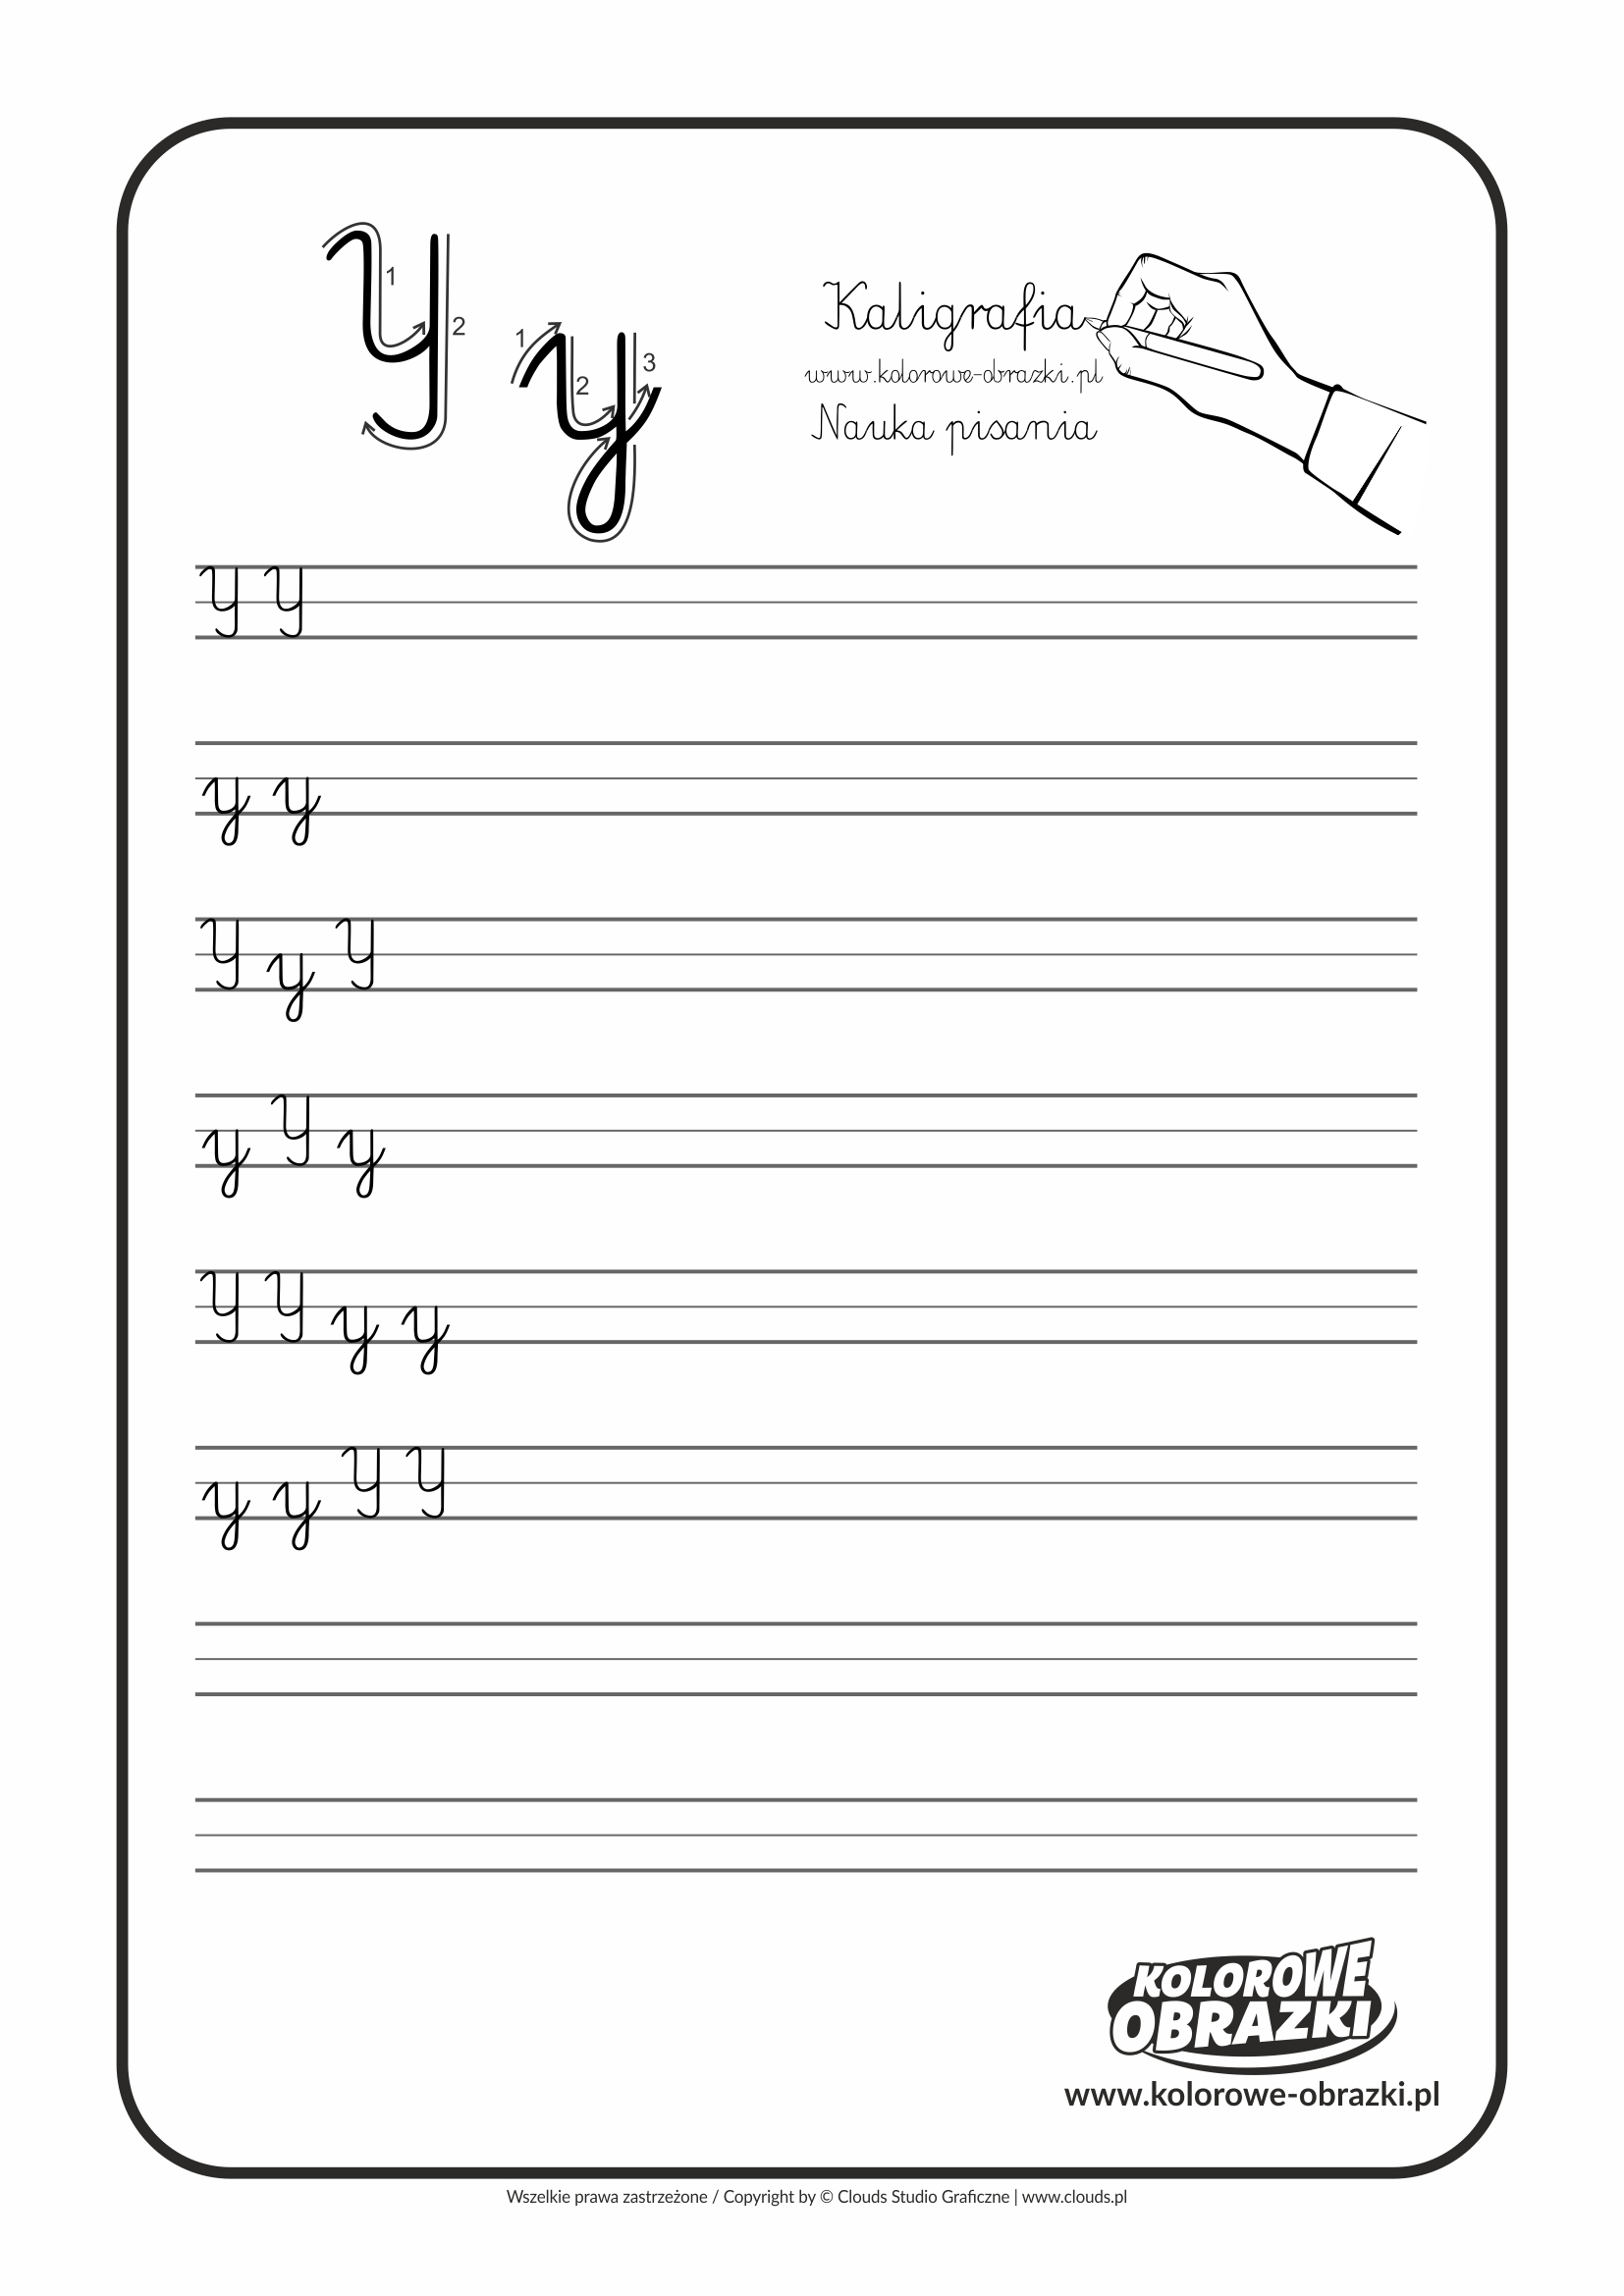 Kaligrafia dla dzieci - Ćwiczenia kaligraficzne / Litera Y. Nauka pisania litery Y